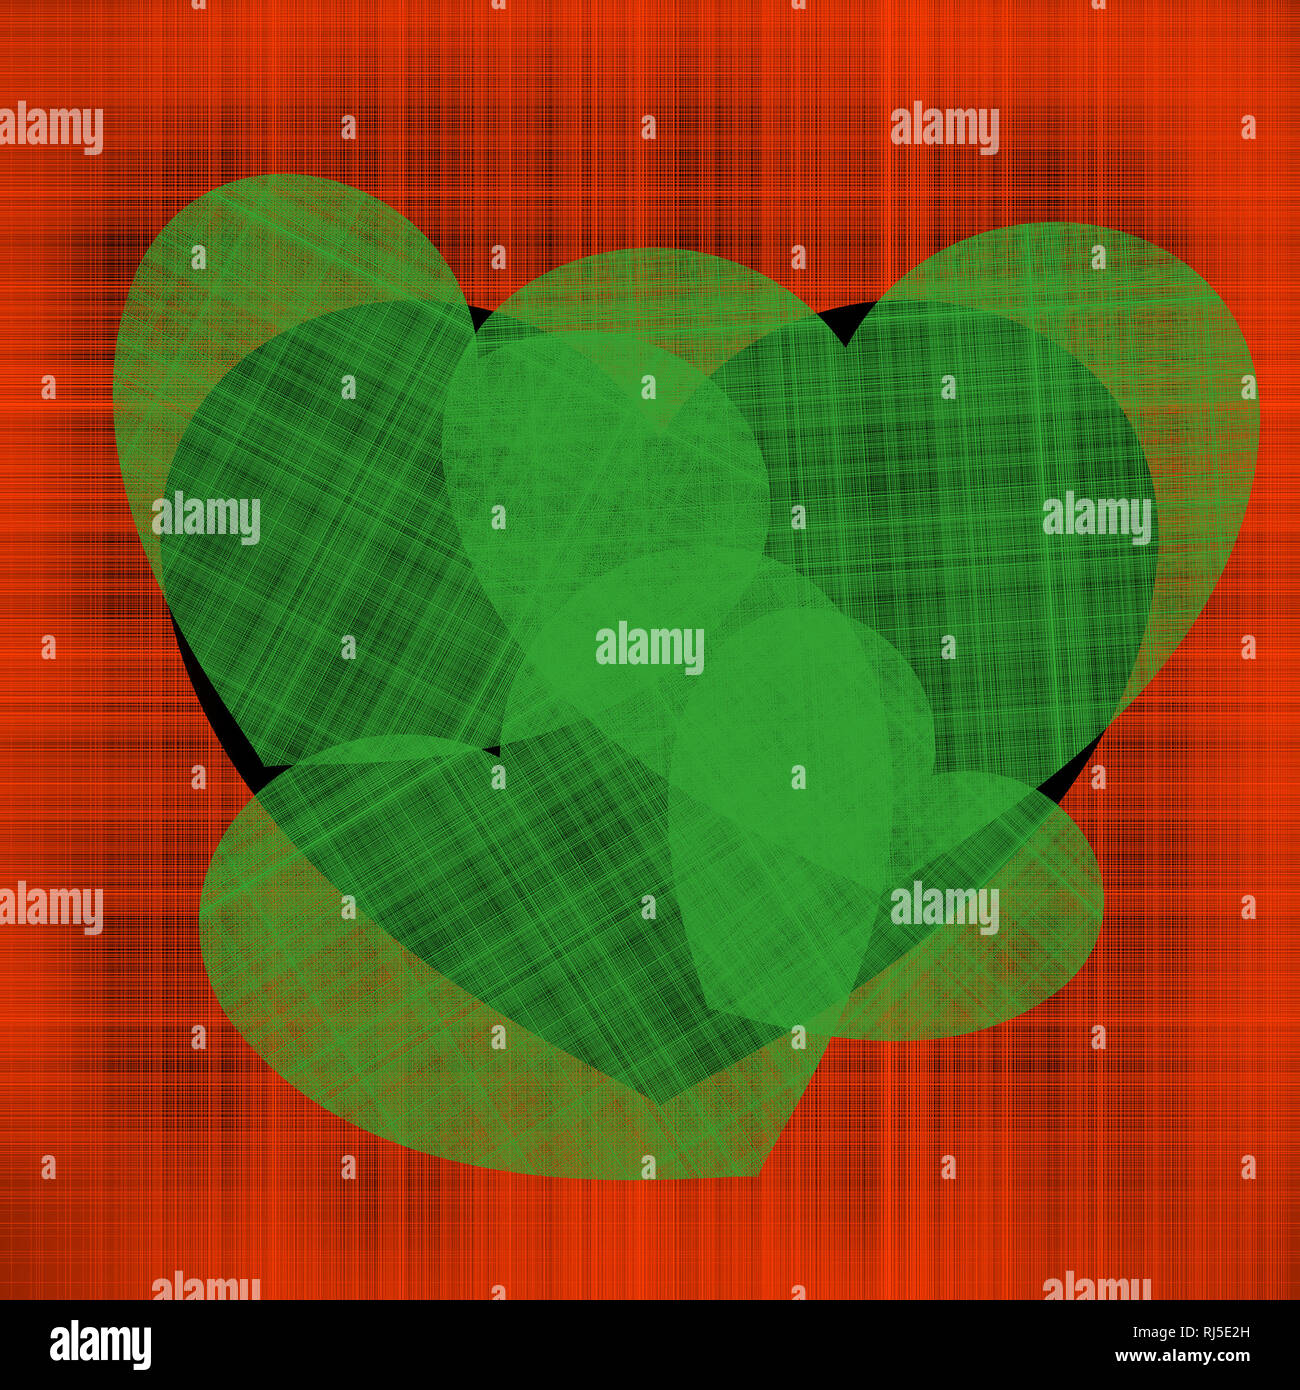 Ilustración de contraste para el día de San Valentín muchos corazones verdes de diferentes tamaños en un corazón negro sobre un fondo de color rojo hilos entrelazados Foto de stock